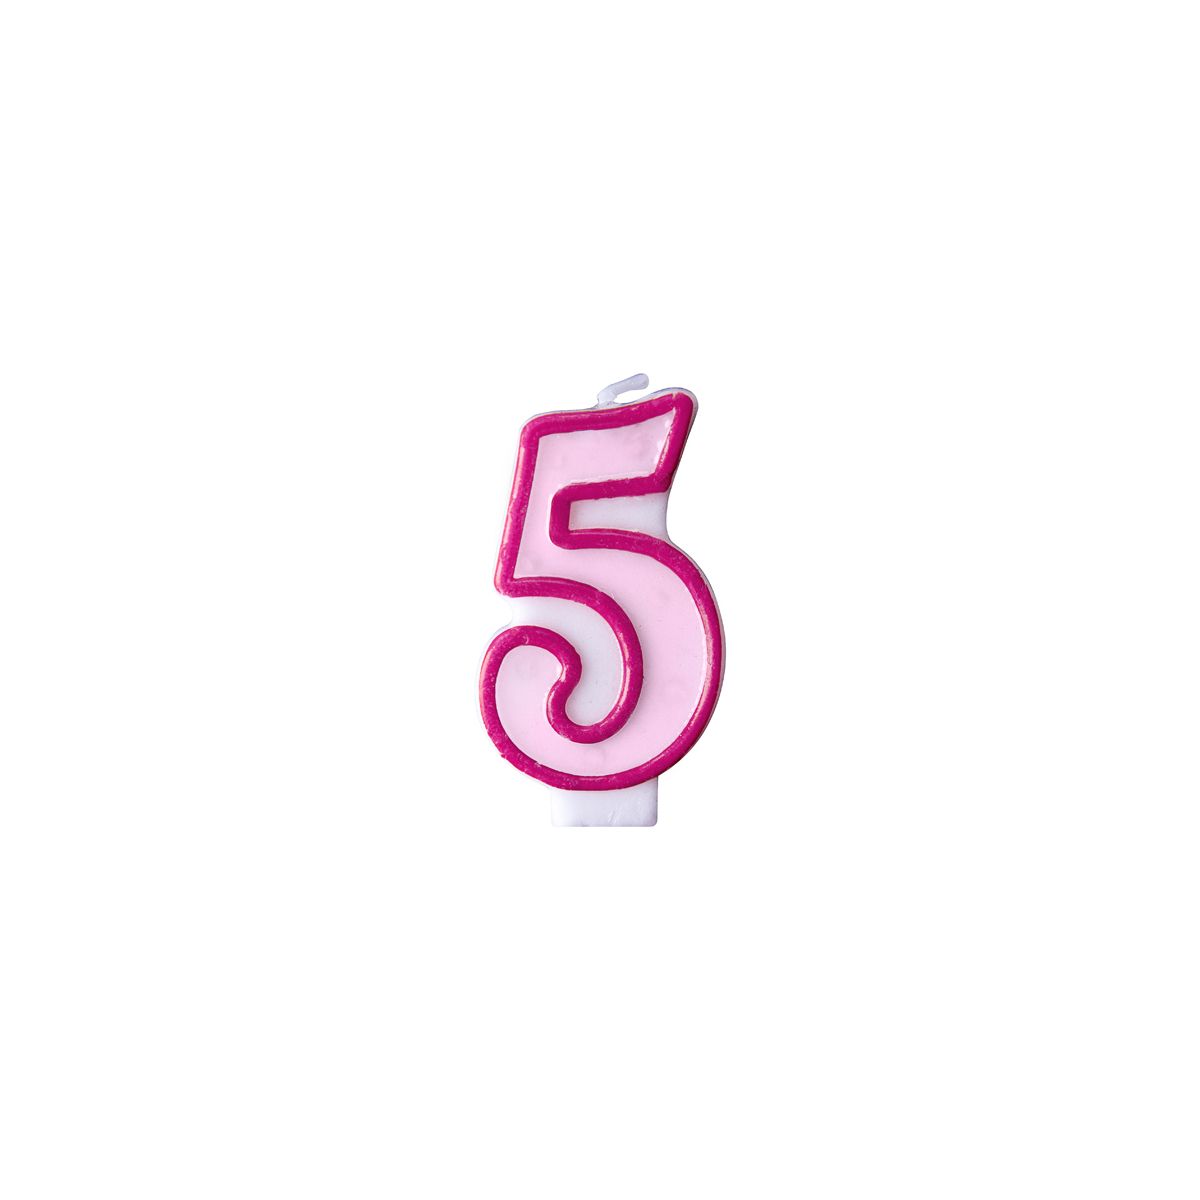 Świeczka urodzinowa Cyferka 5 w kolorze różowym 7 centymetrów Partydeco (SCU1-5-006)